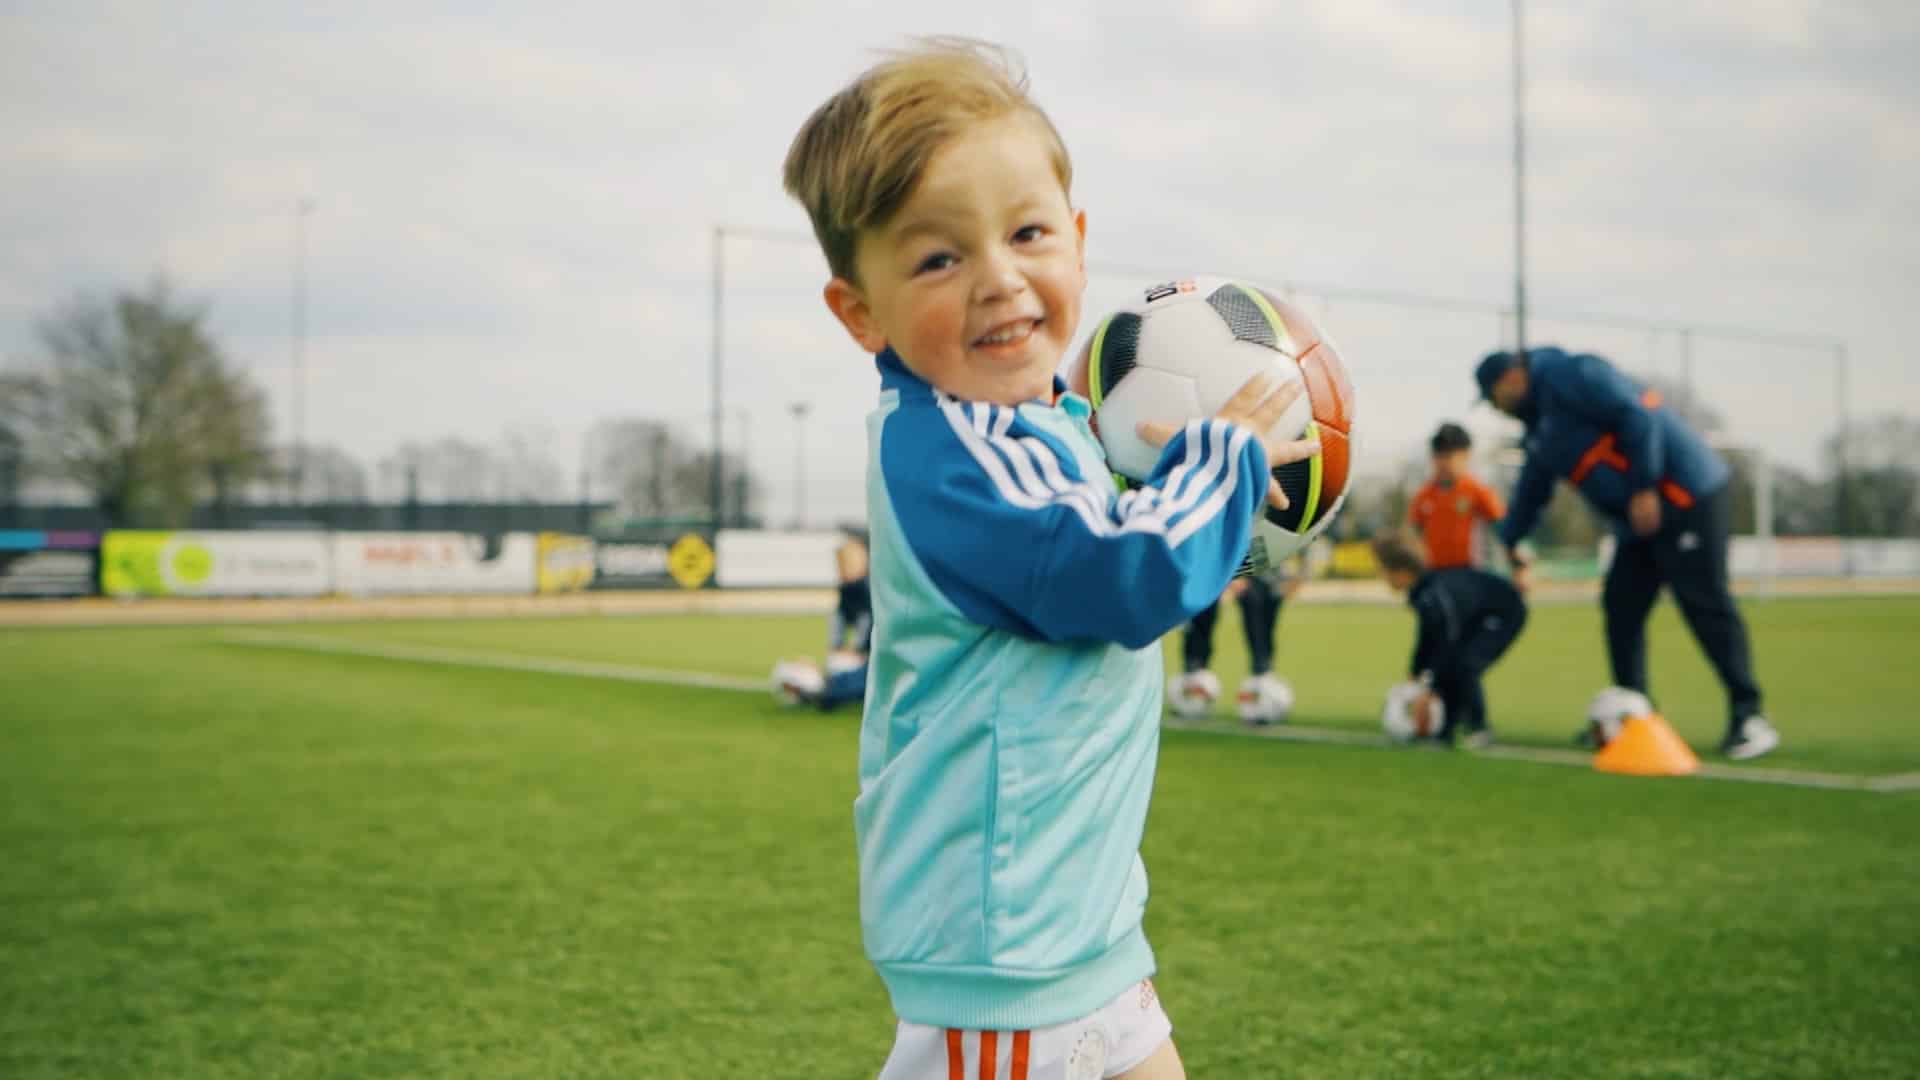 Lachende jongeman kijkt in de camera terwijl hij een voetbal vast heeft.